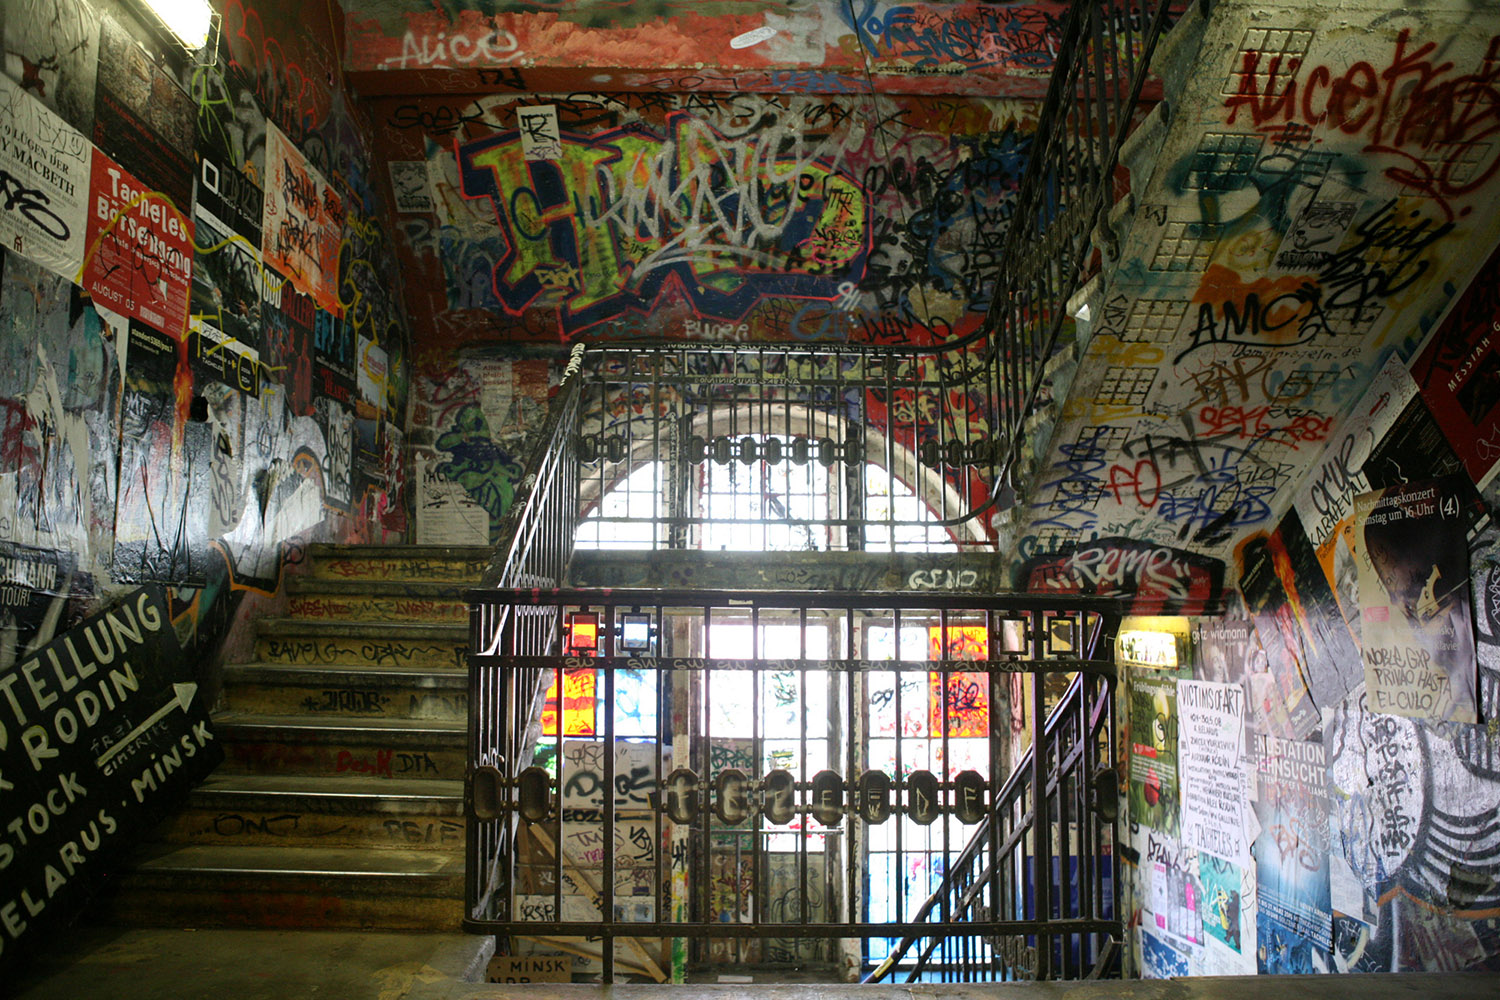 4_Roi Boshi-Kunsthaus_Tacheles_stairway_with_Graffiti.jpg